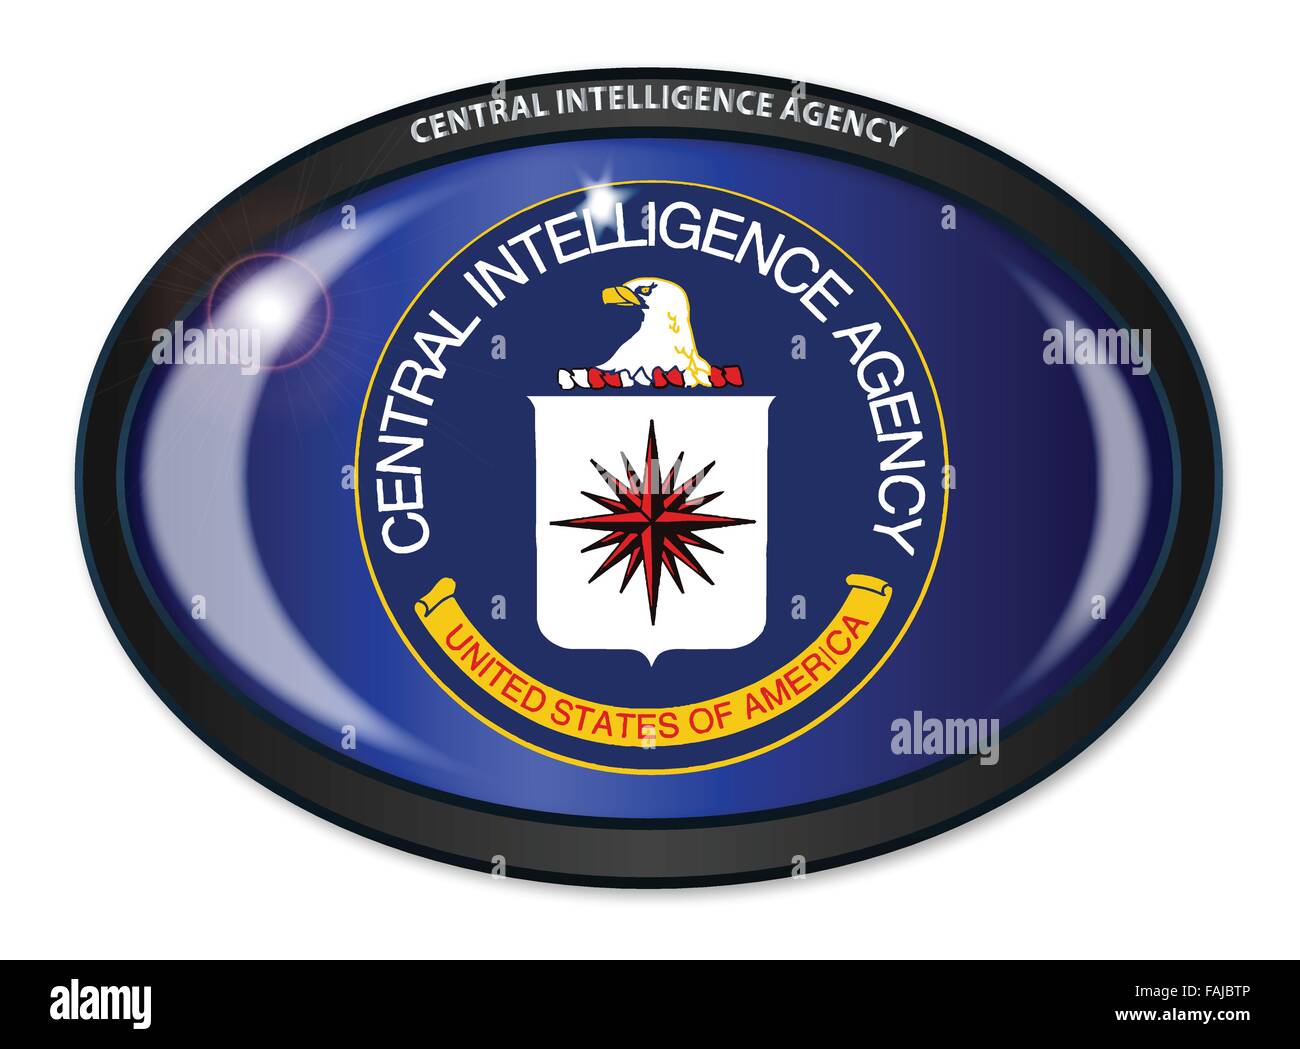 Pavillon de la Central Intelligence Agency des États-Unis d'Amérique situé dans un bouton ovale noir Illustration de Vecteur